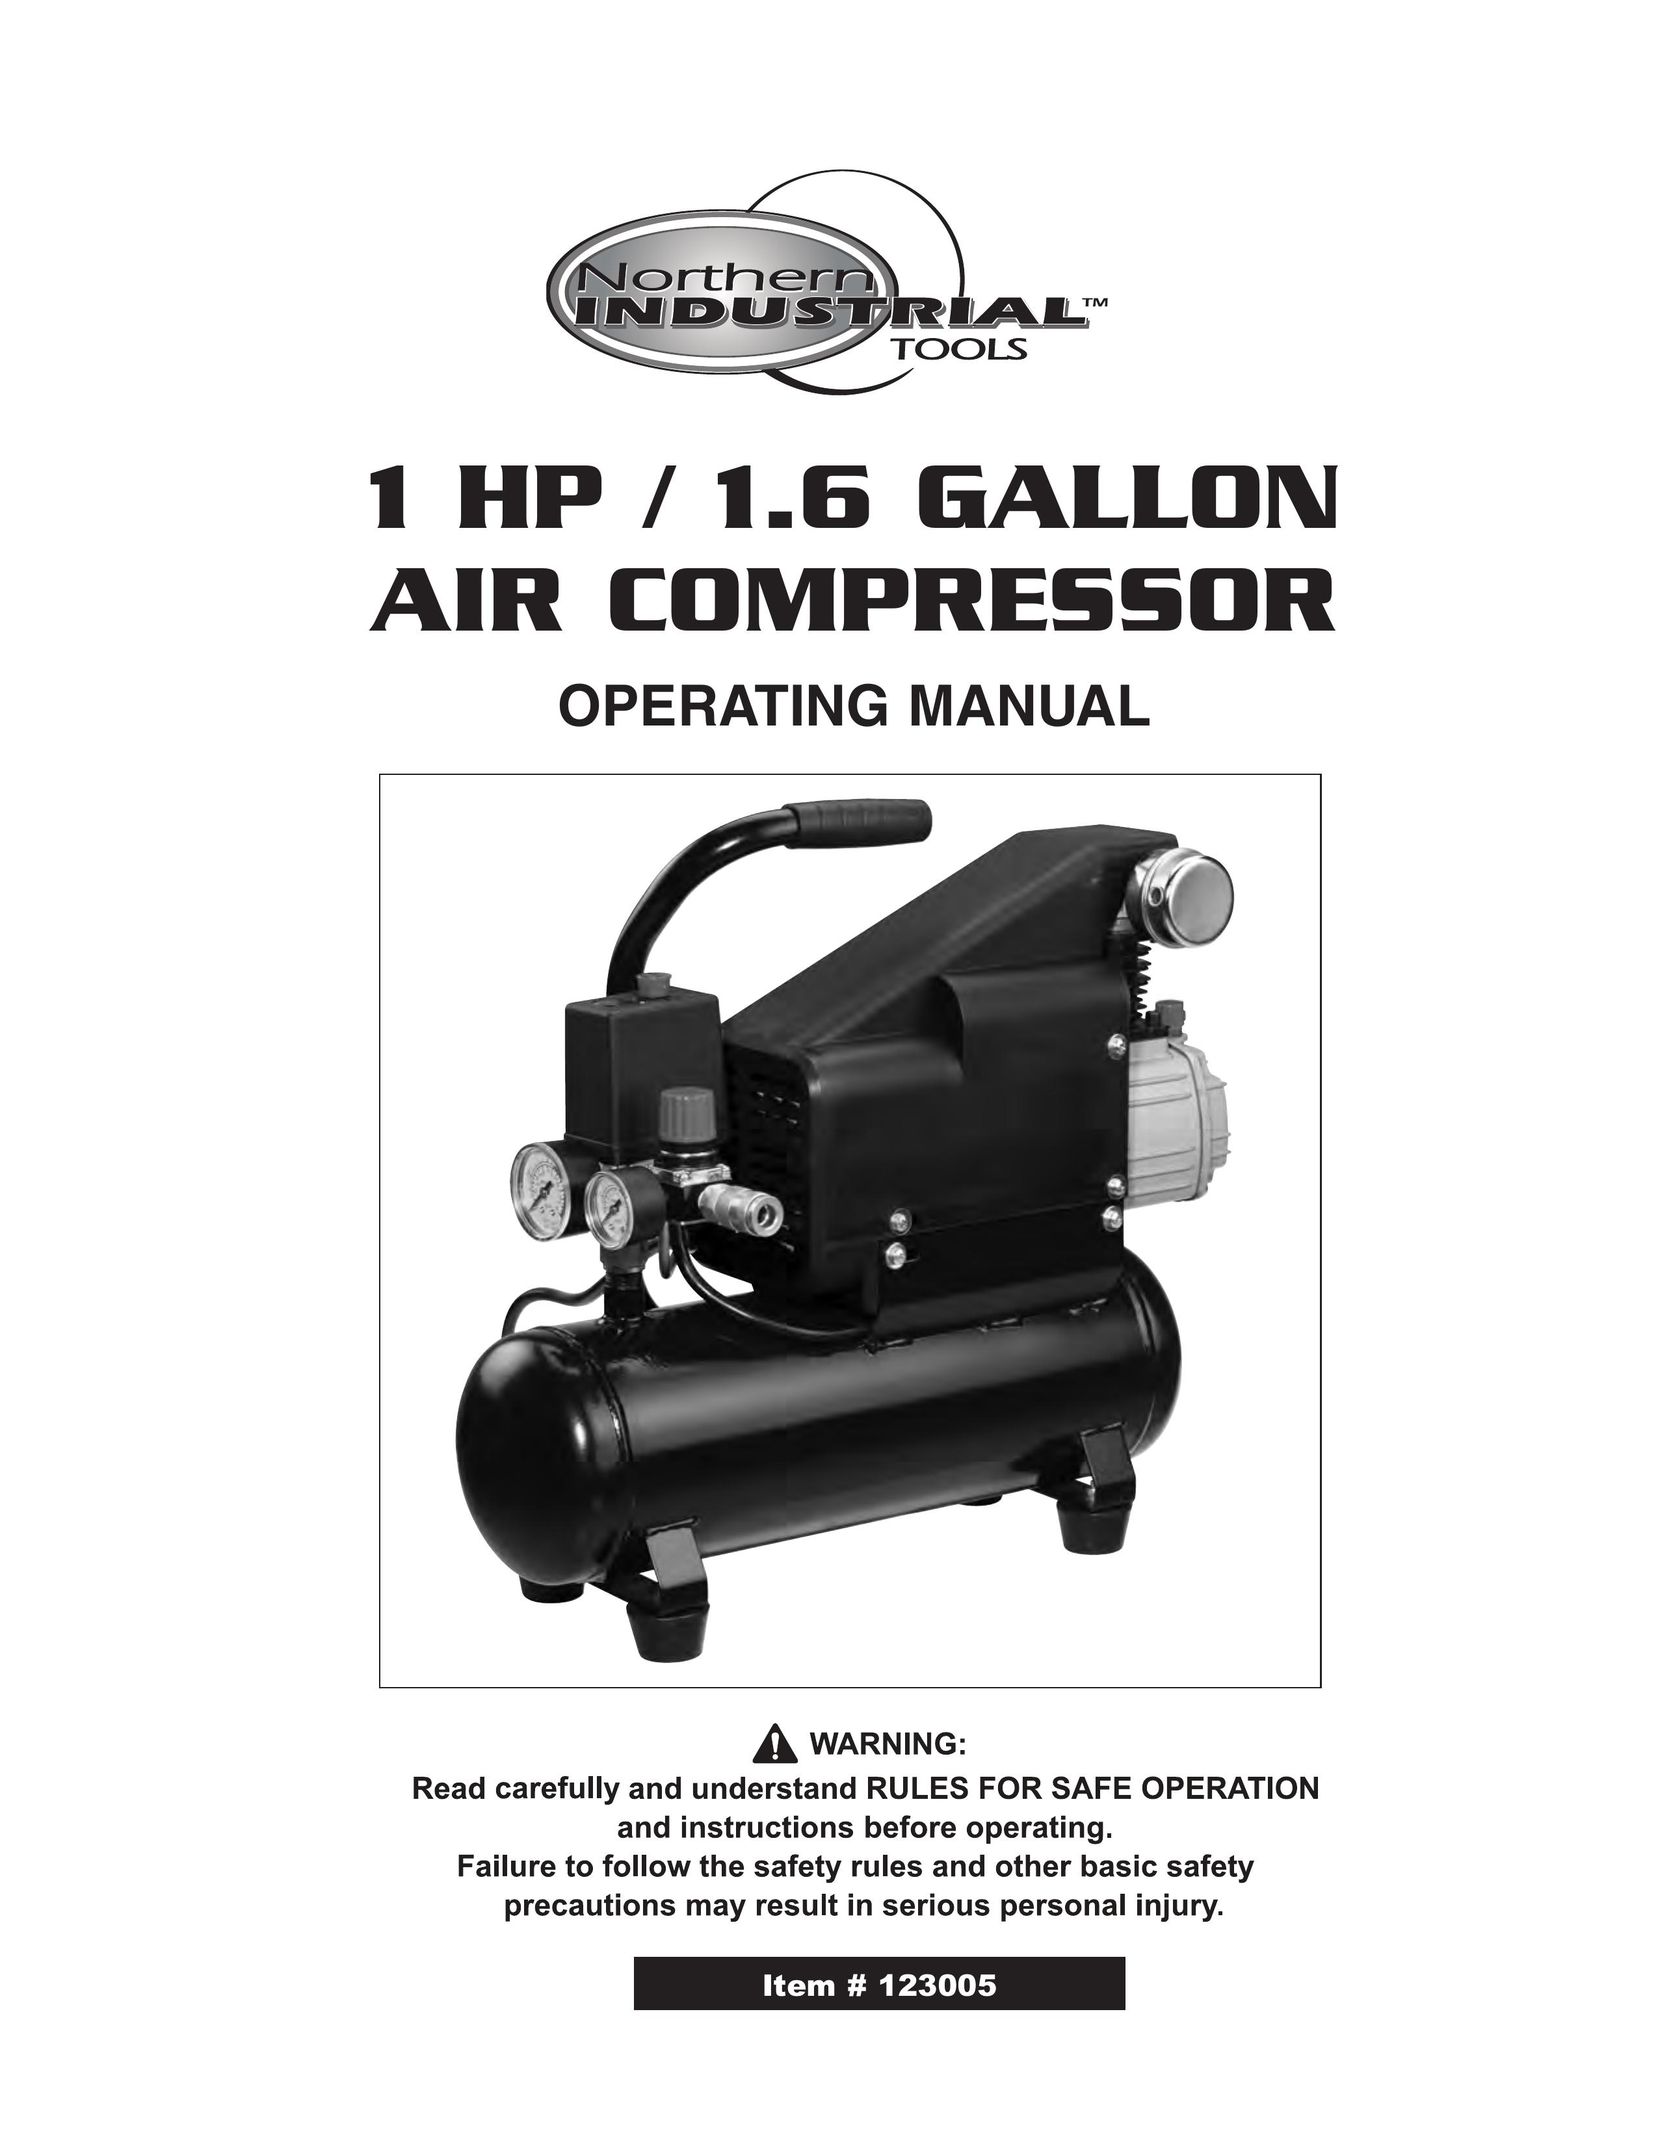 Northern Industrial Tools 1 HP / 1.6 GALLON AIR COMPRESSOR Air Compressor User Manual